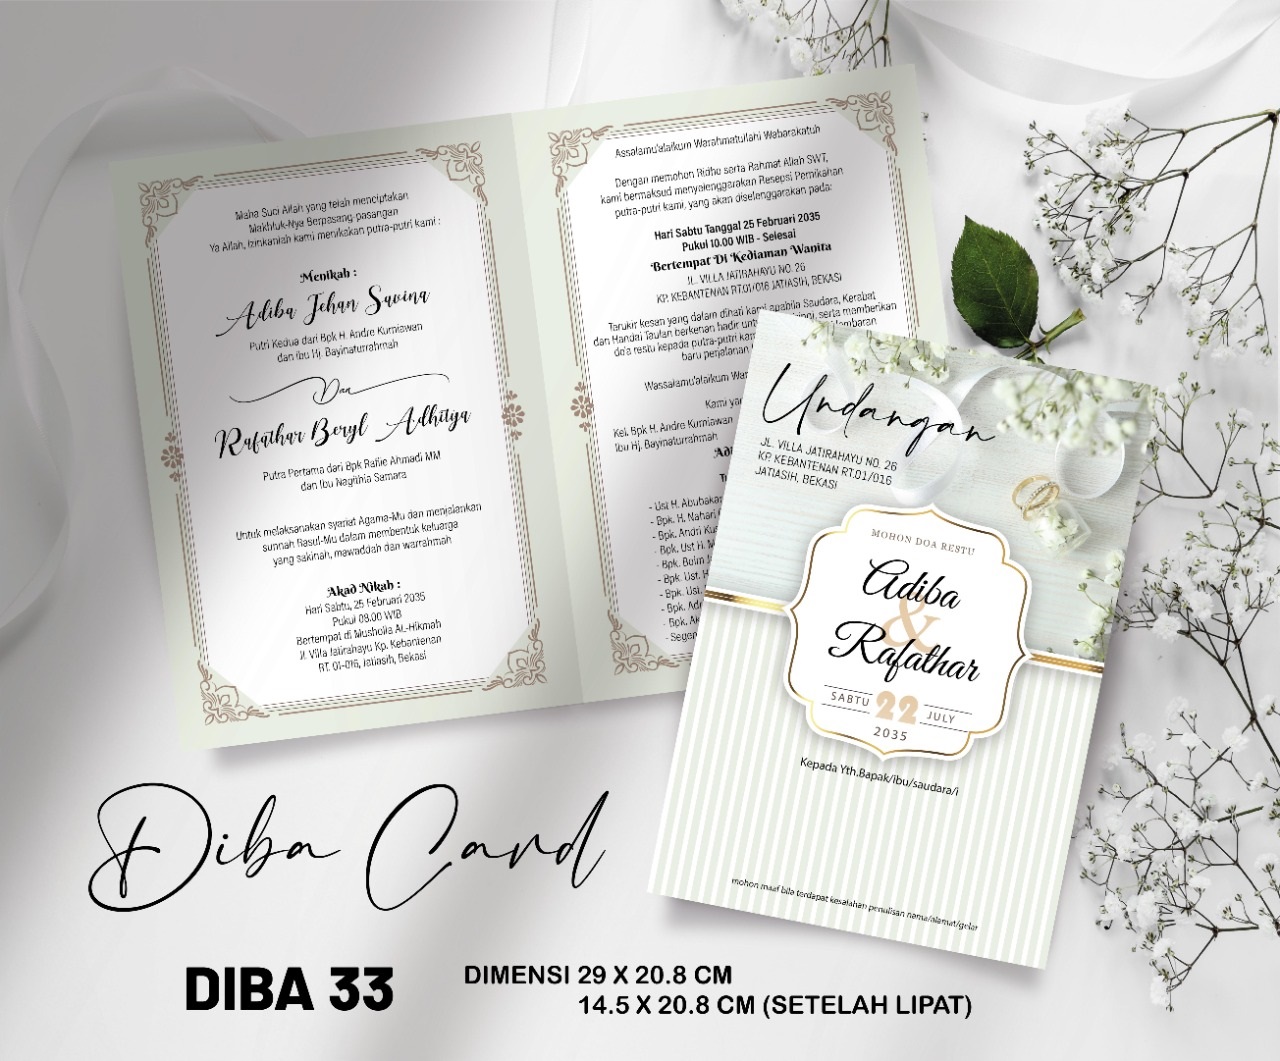 DIBA CARD 33 